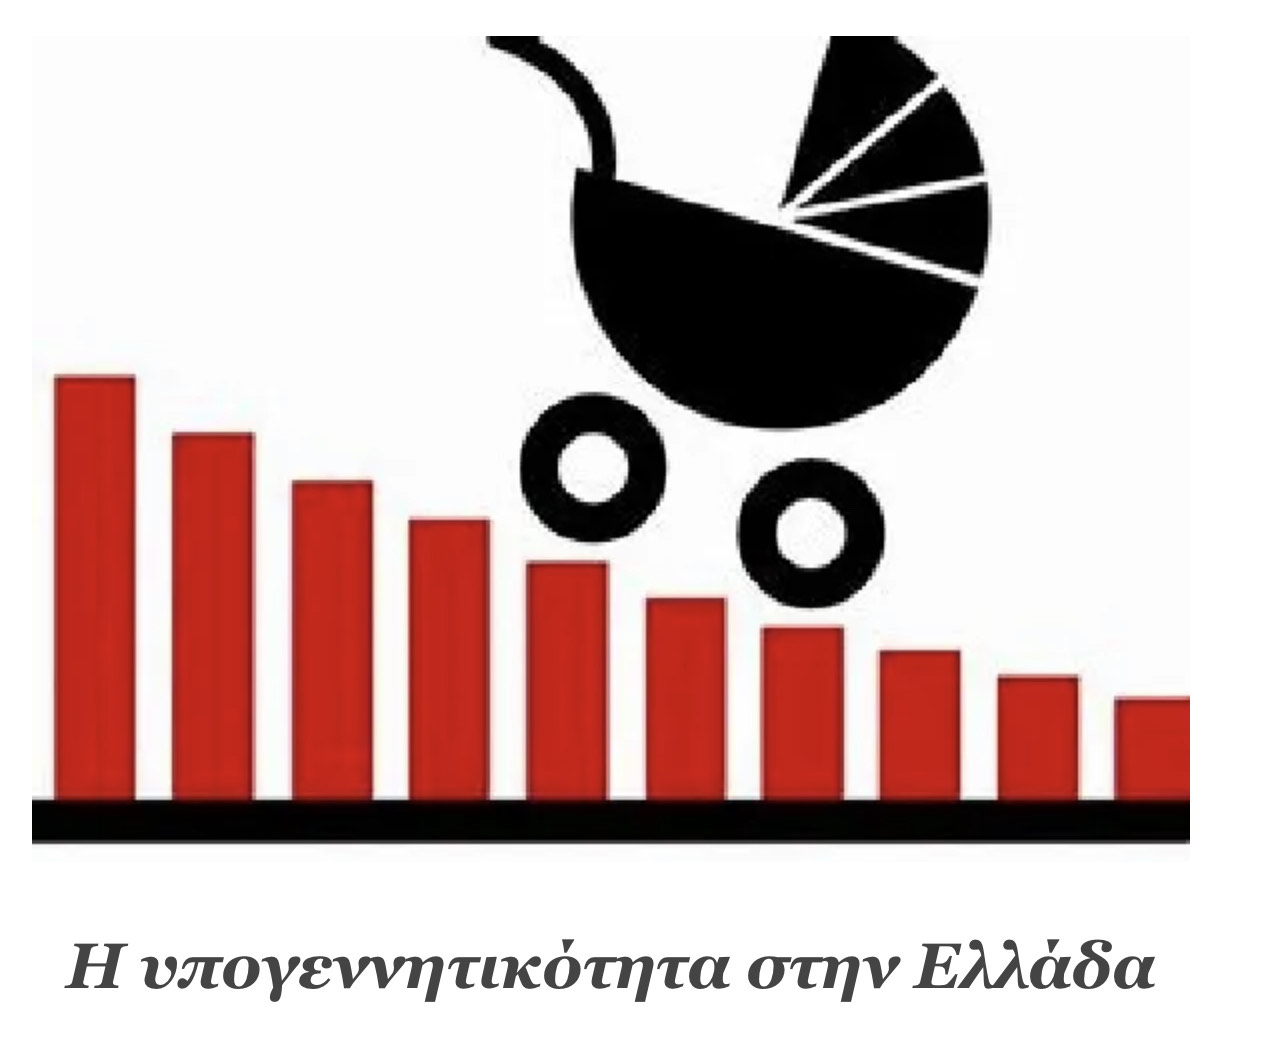 Η υπογεννητικότητα στην Ελλάδα